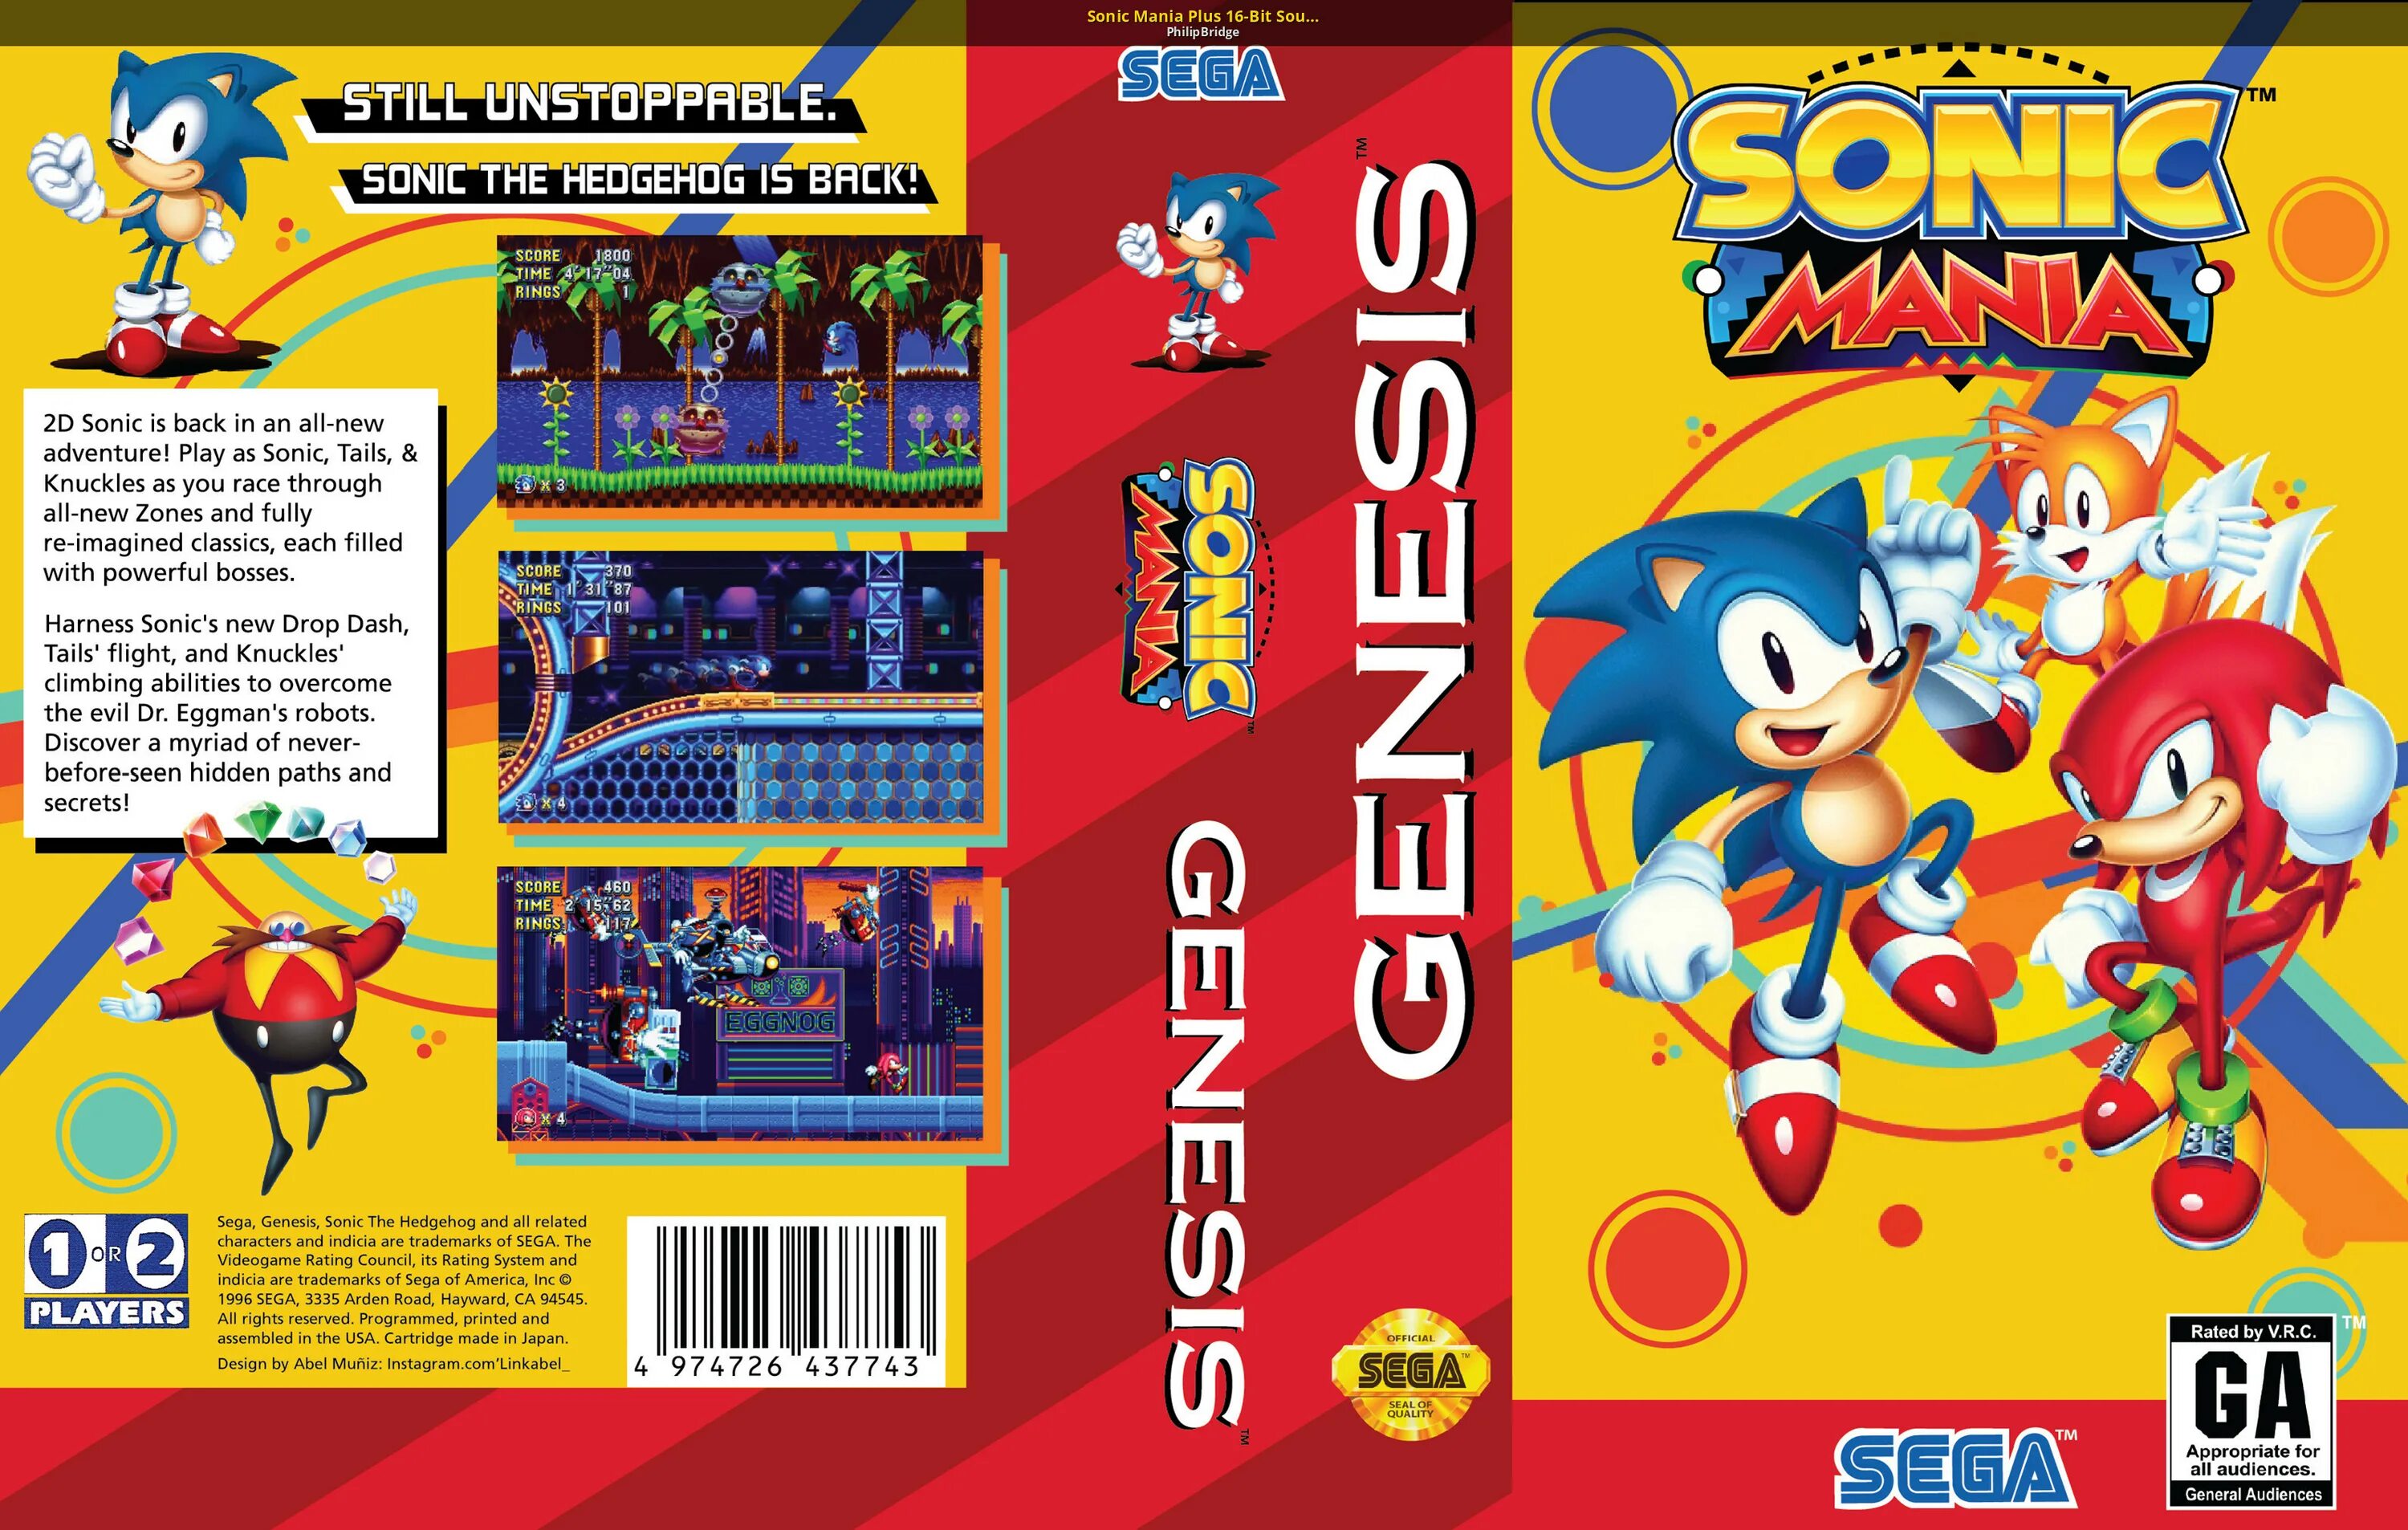 Картридж для сеги Sonic Mania. Sonic Mania Sega Genesis. Соник Мания плюс. Sonic Mania Plus обложка. Играть в соник манию